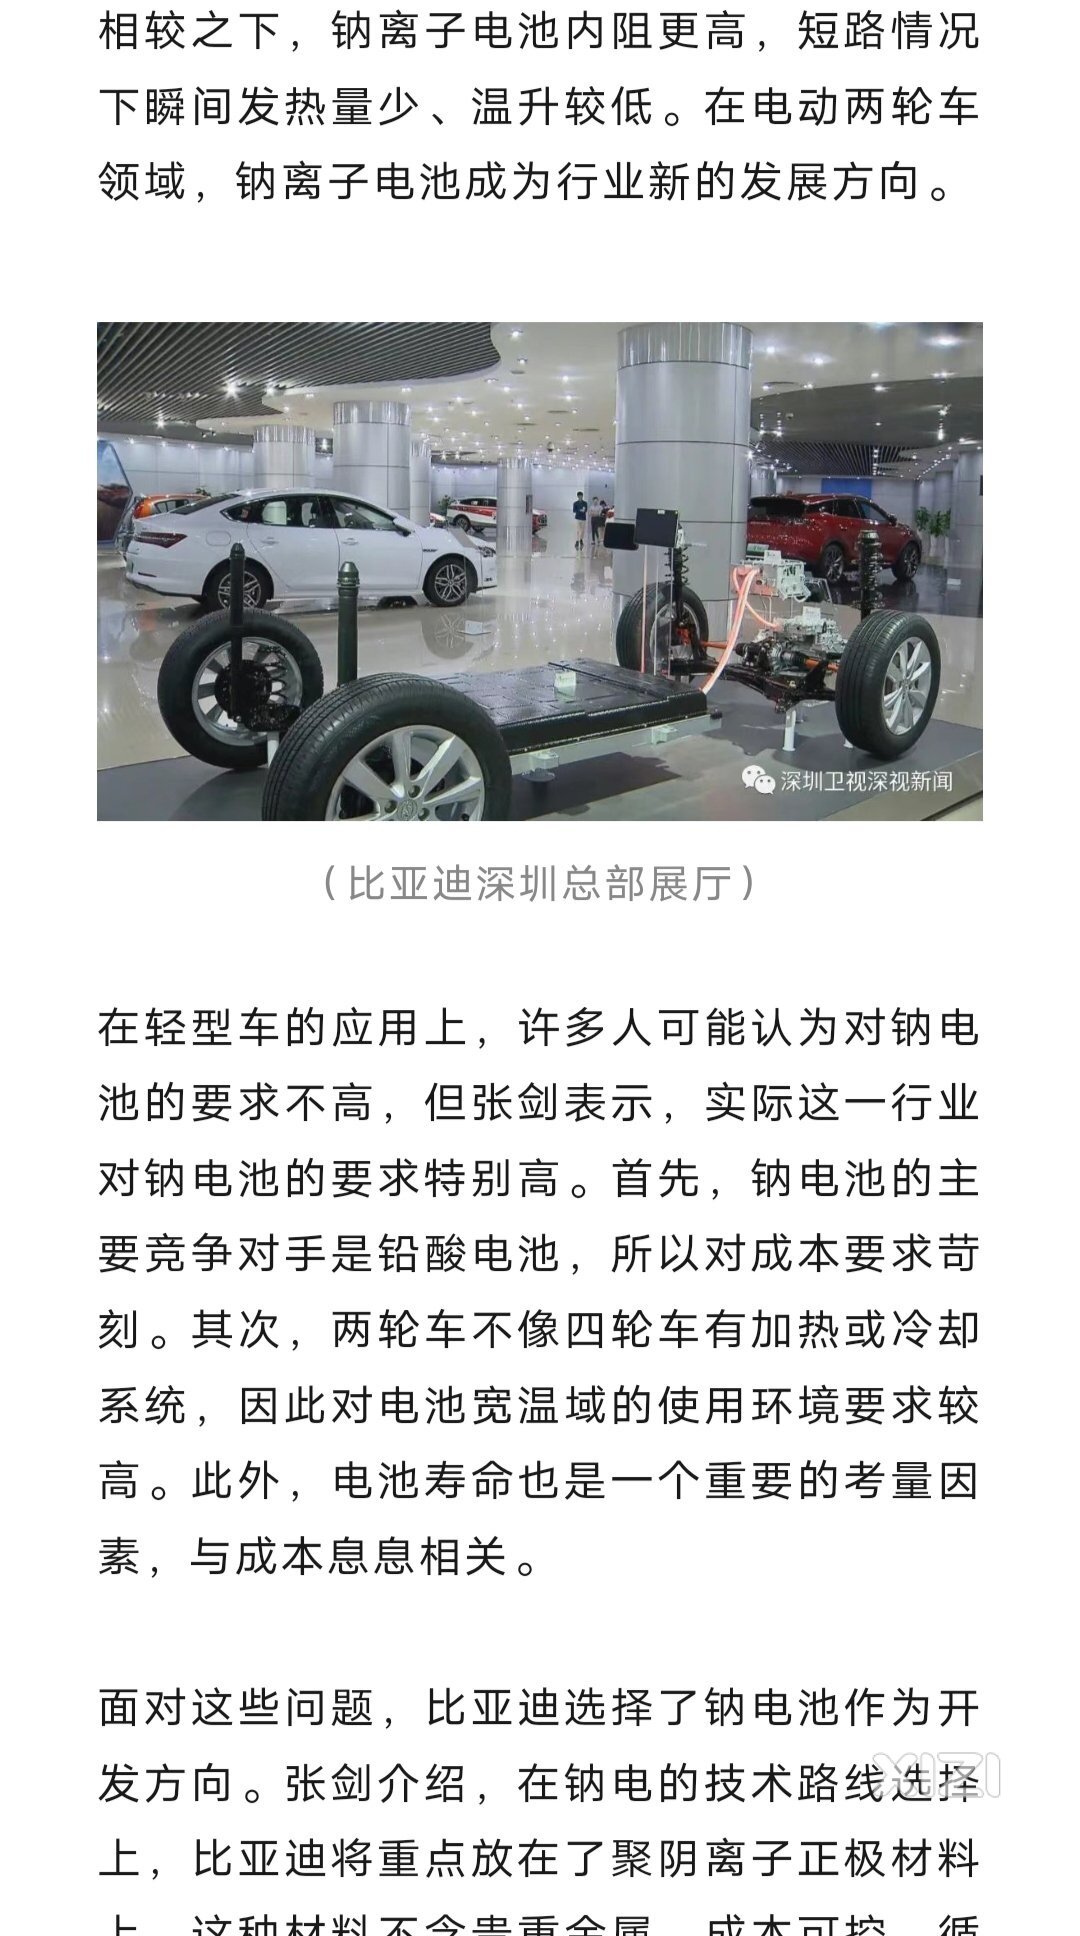 比亚迪开始进军两轮车钠电池领悟。惠州应主动引进并划地给比亚迪